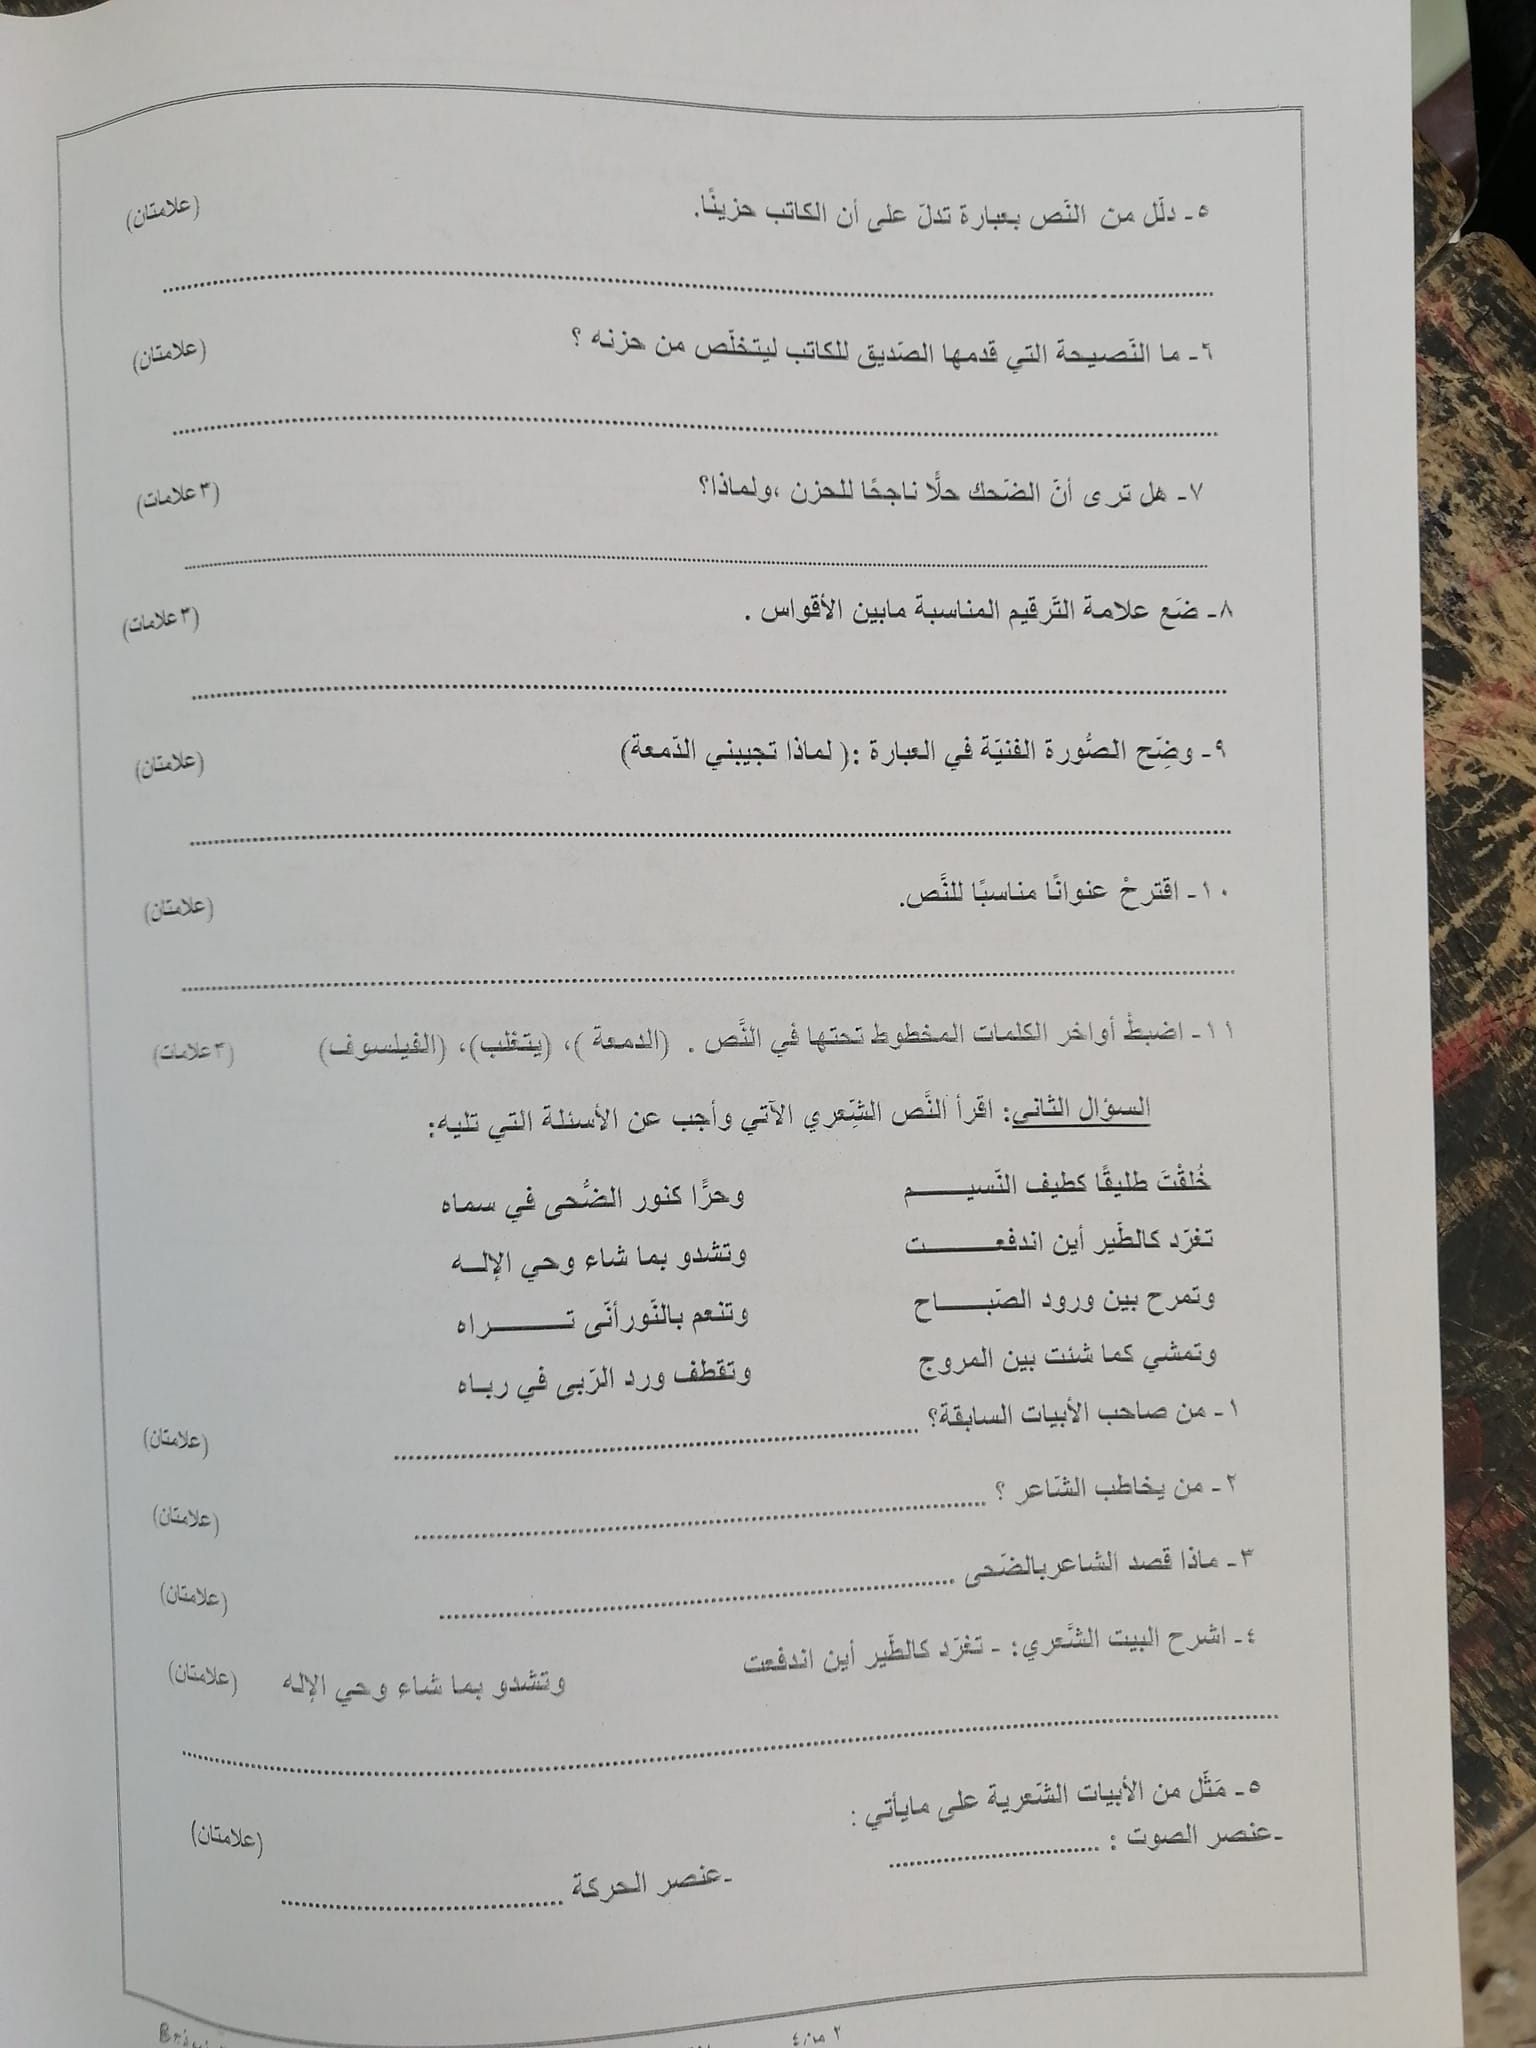 2 صور امتحان نهائي اللغة العربية للصف الثامن الفصل الثاني 2022 نموذج B وكالة.jpg